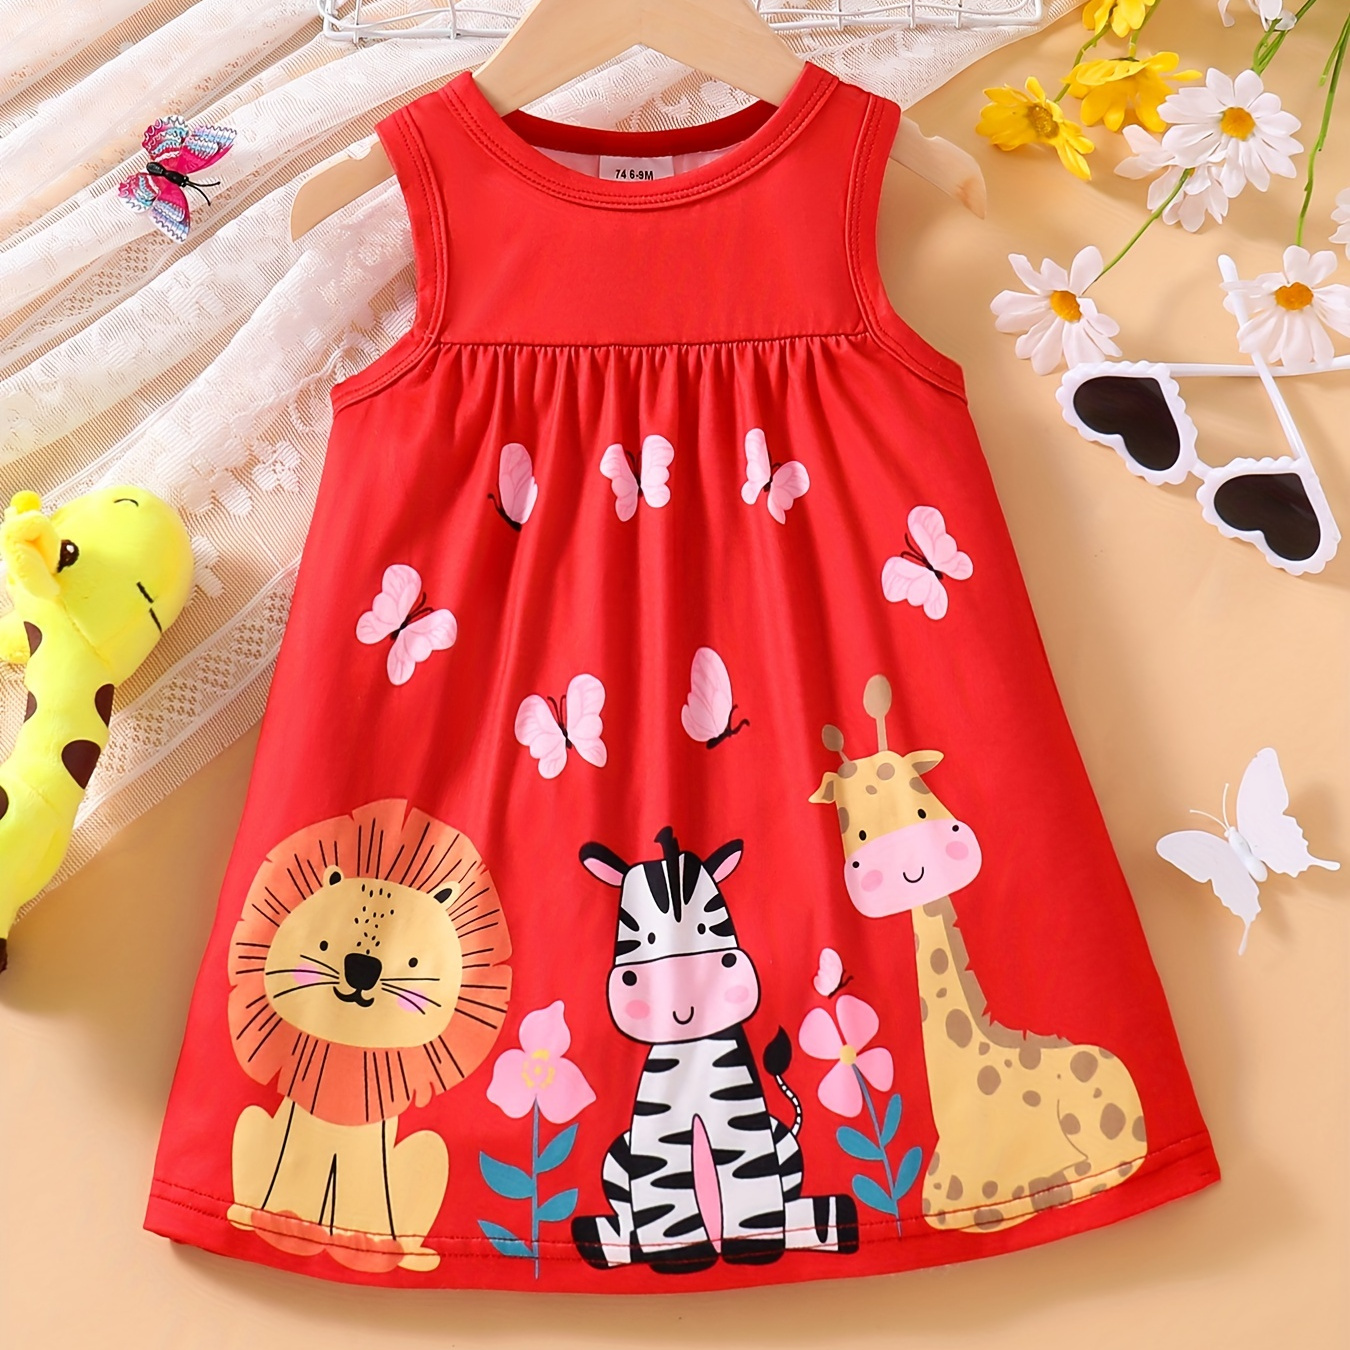 

Baby's Casual Cartoon Zebra Lion Giraffe Pattern Sleeveless Dress, Infant & Toddler Girl's Clothing For Summer/spring, As Gift